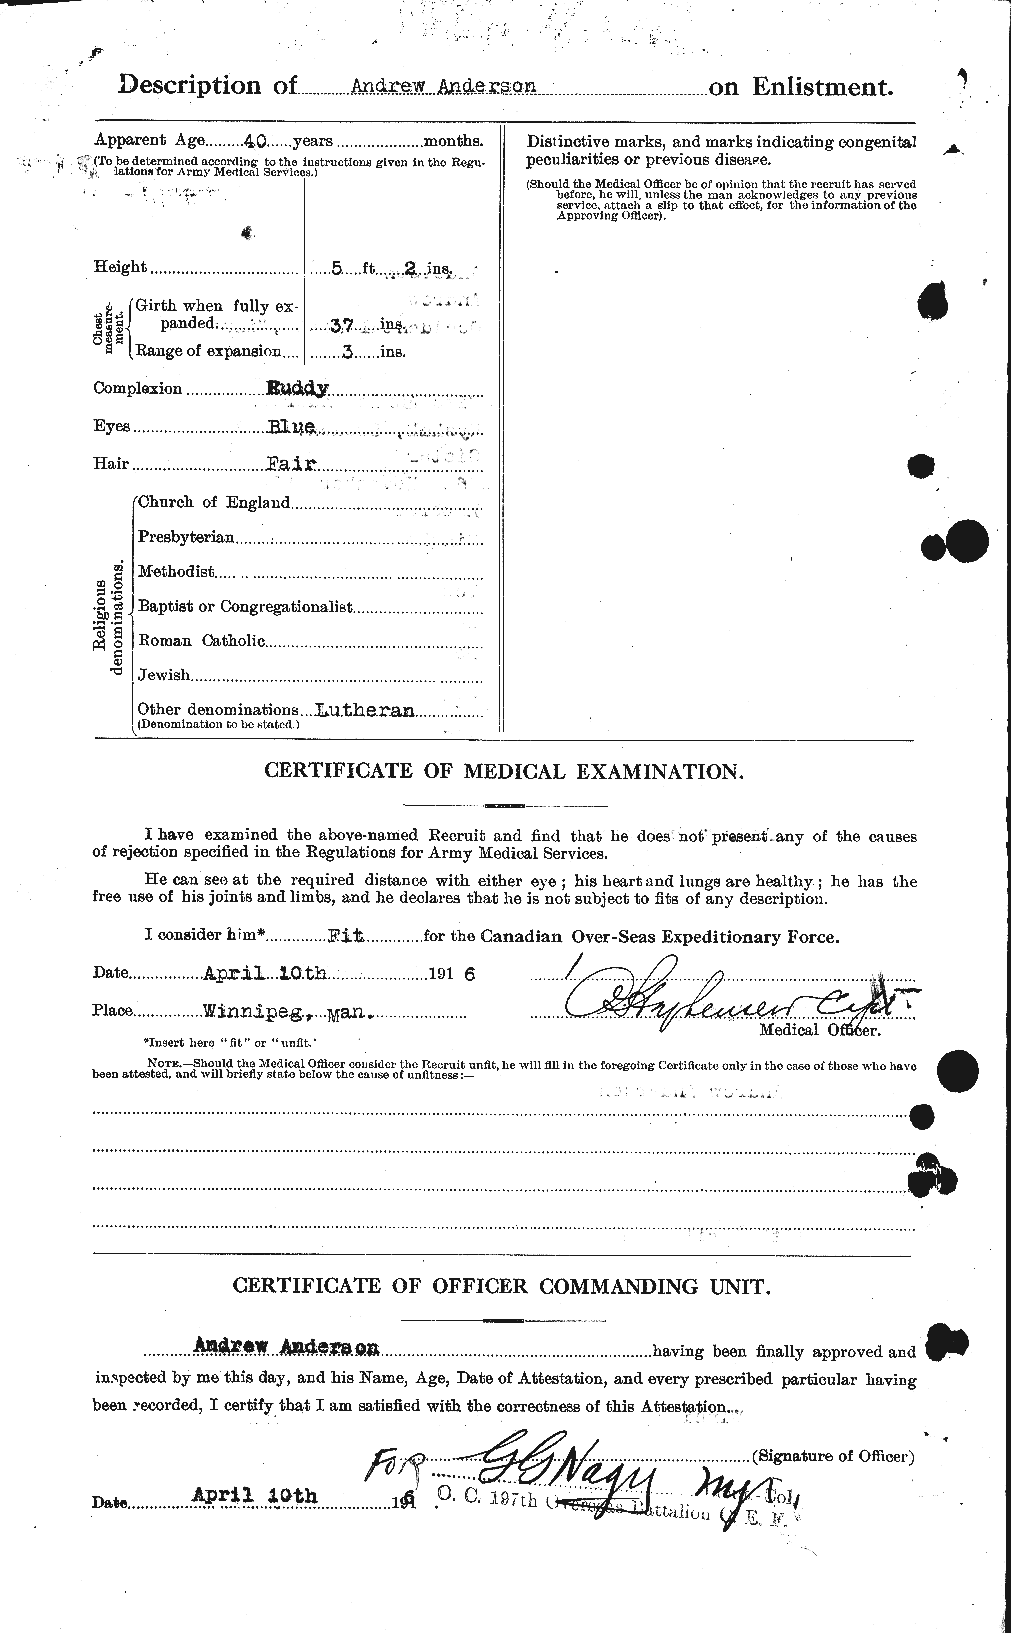 Dossiers du Personnel de la Première Guerre mondiale - CEC 209415b